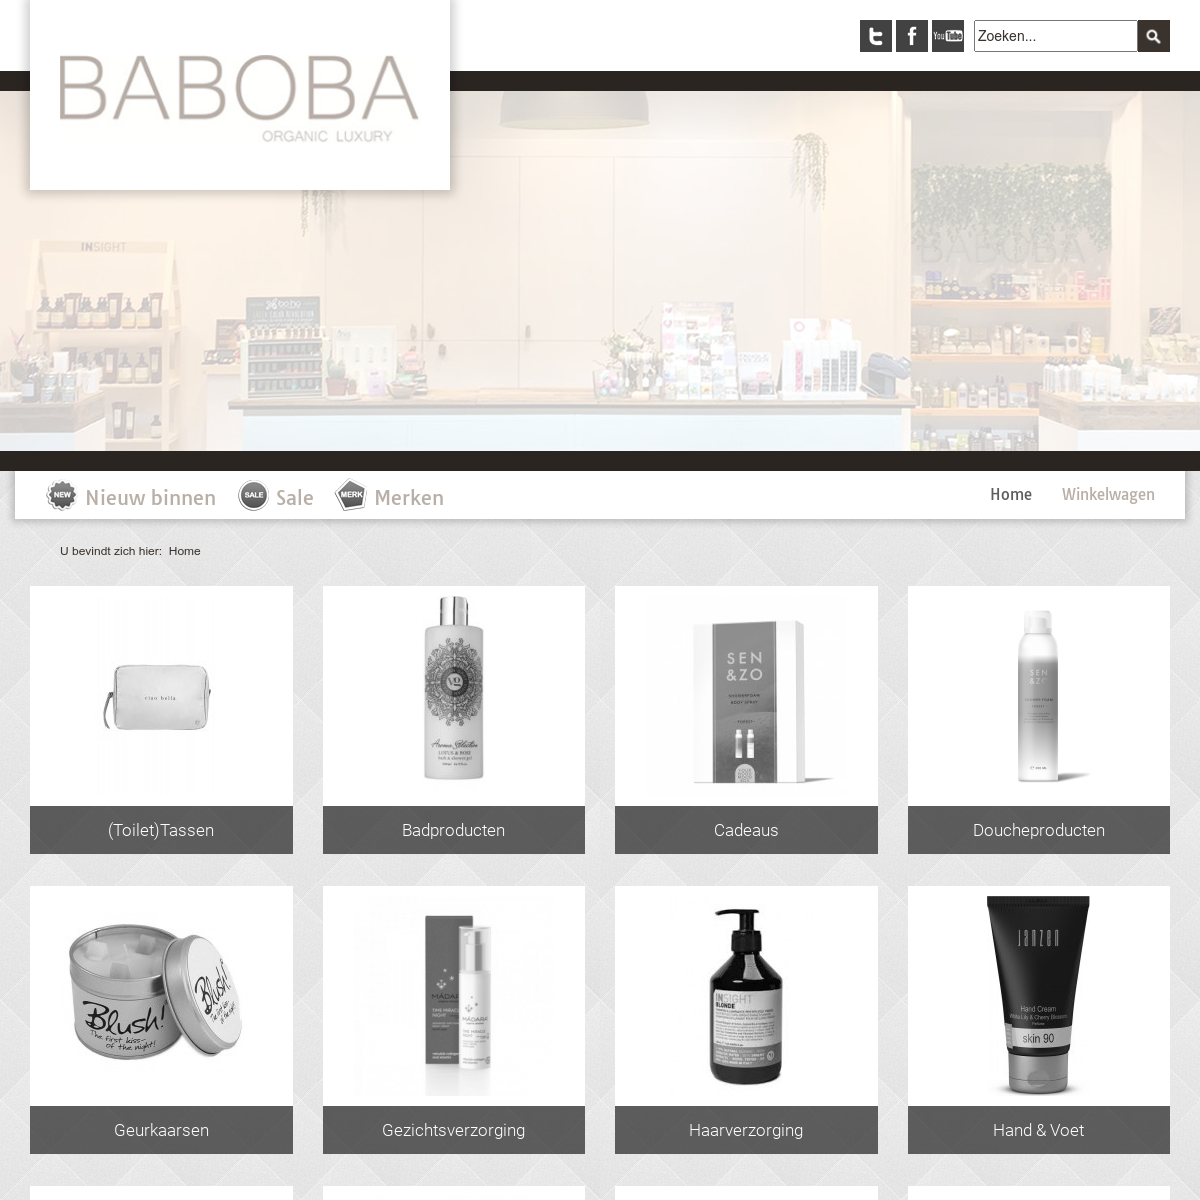 Welkom bij Baboba Organic Luxury homepage